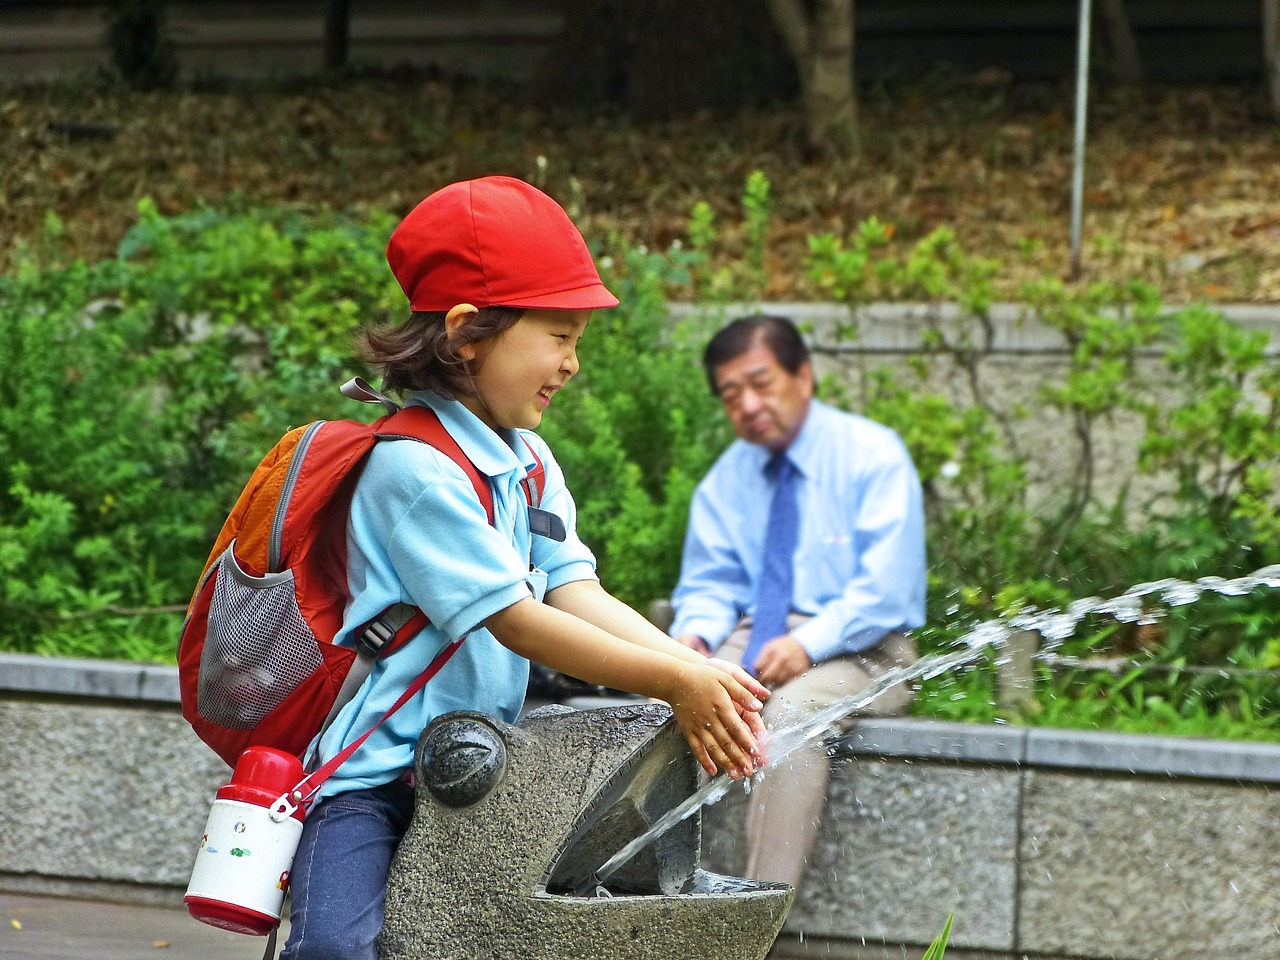 Lavoro senza limiti per gli insegnanti giapponesi, che rischiano il Karoshi